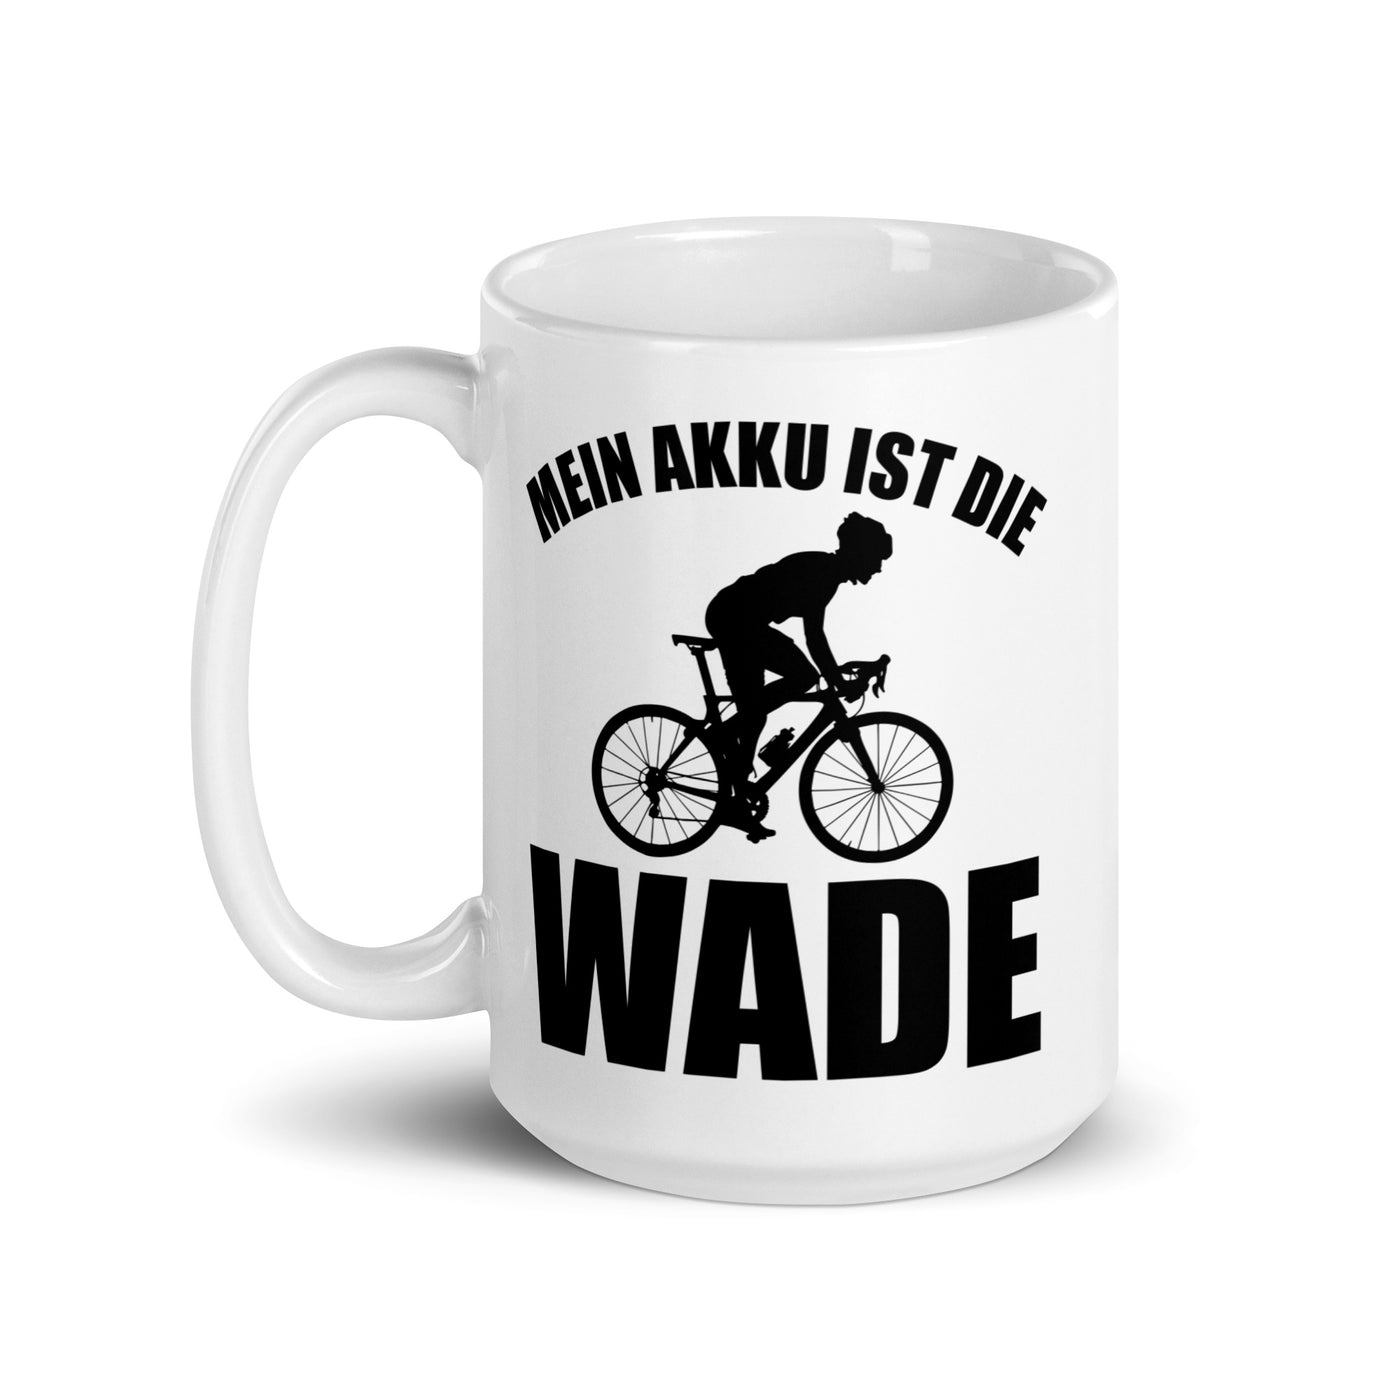 Mein Akku Ist Die Wade 2 - Tasse fahrrad